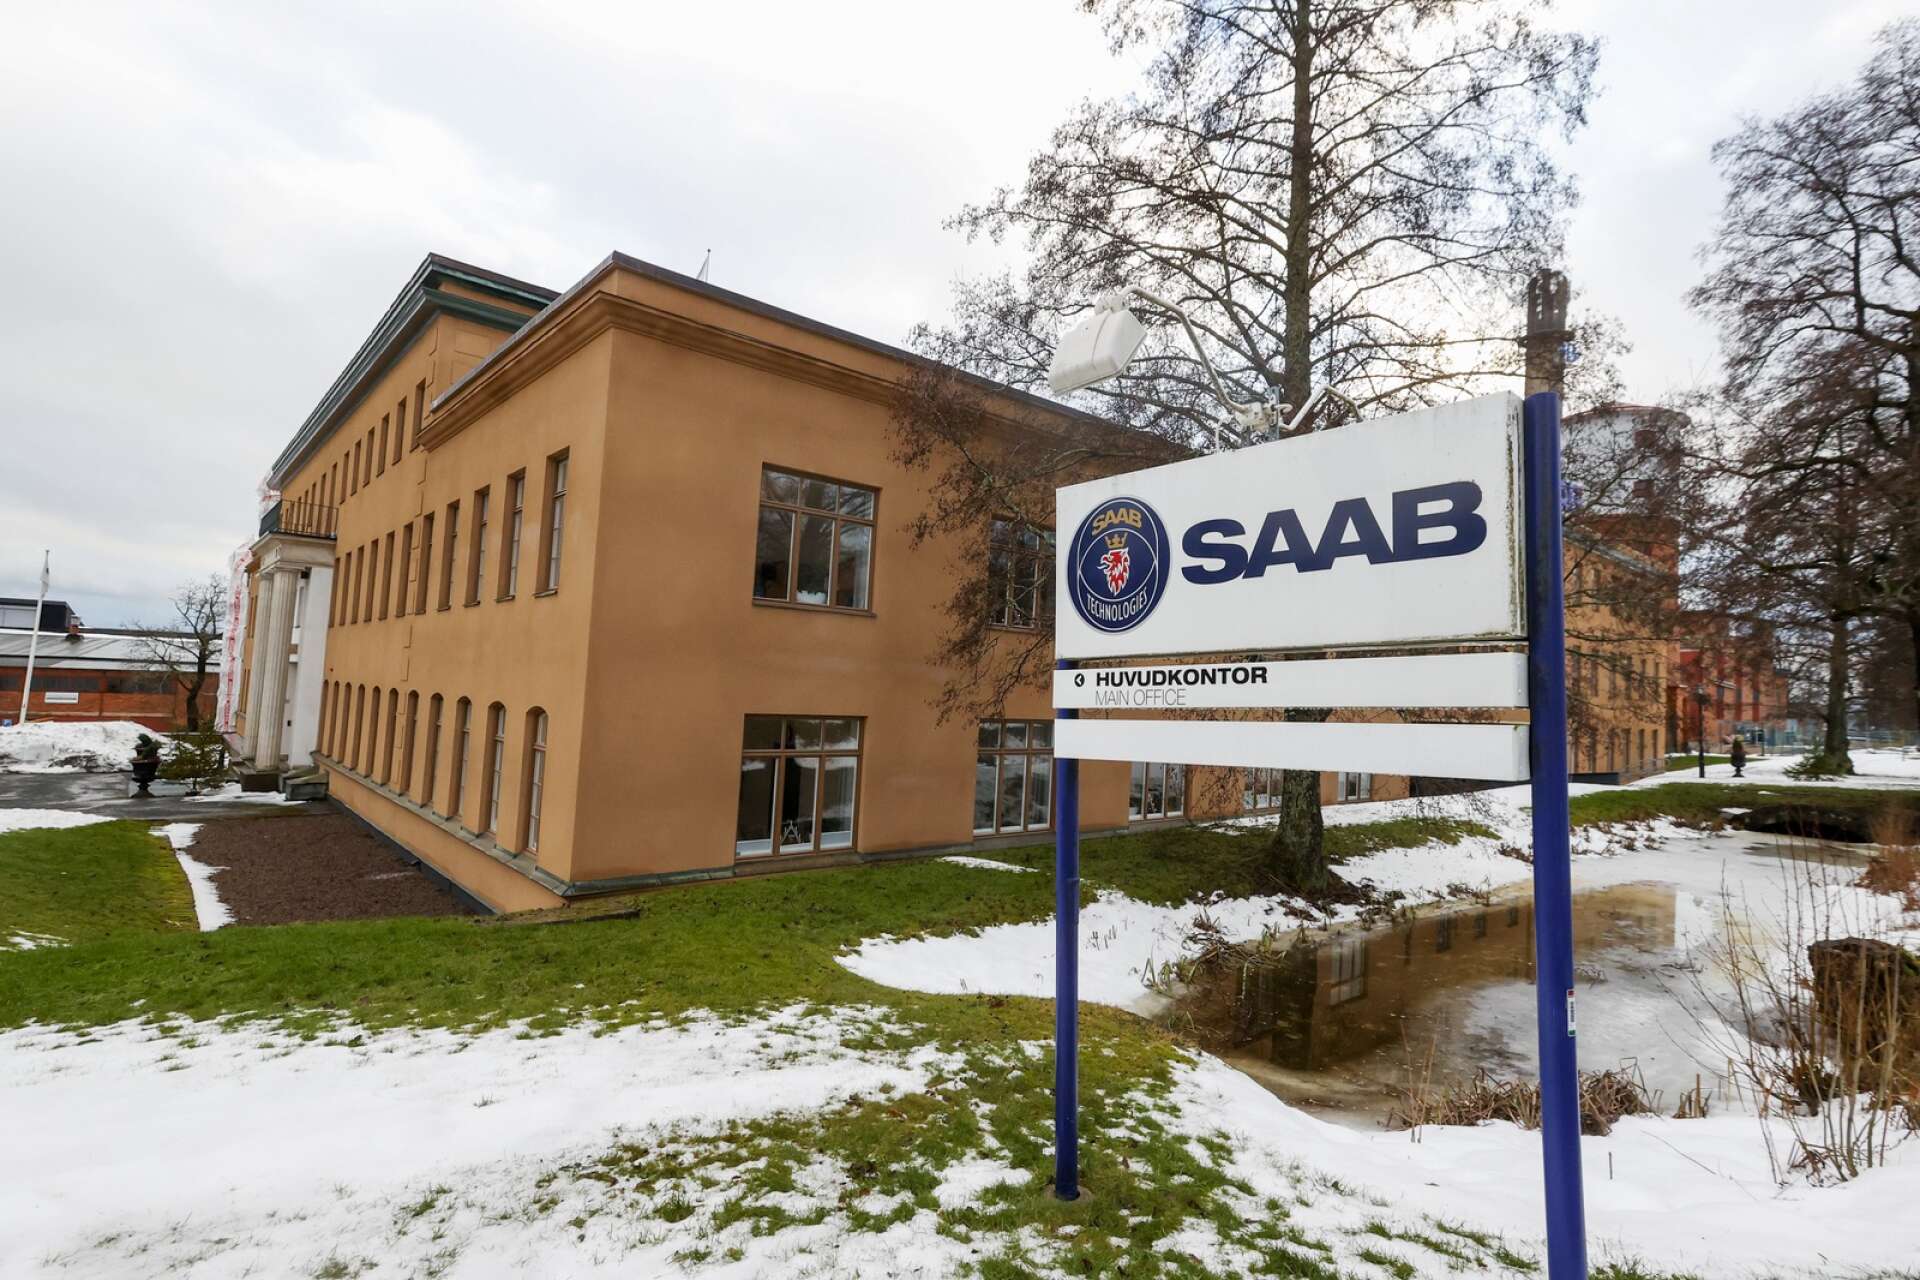 Cirka 1300 personer arbetar vid Saab Dynamics i Karlskoga. Snart öppnas ett kontor i Karlstad också, som kan få ett par hundra anställda.